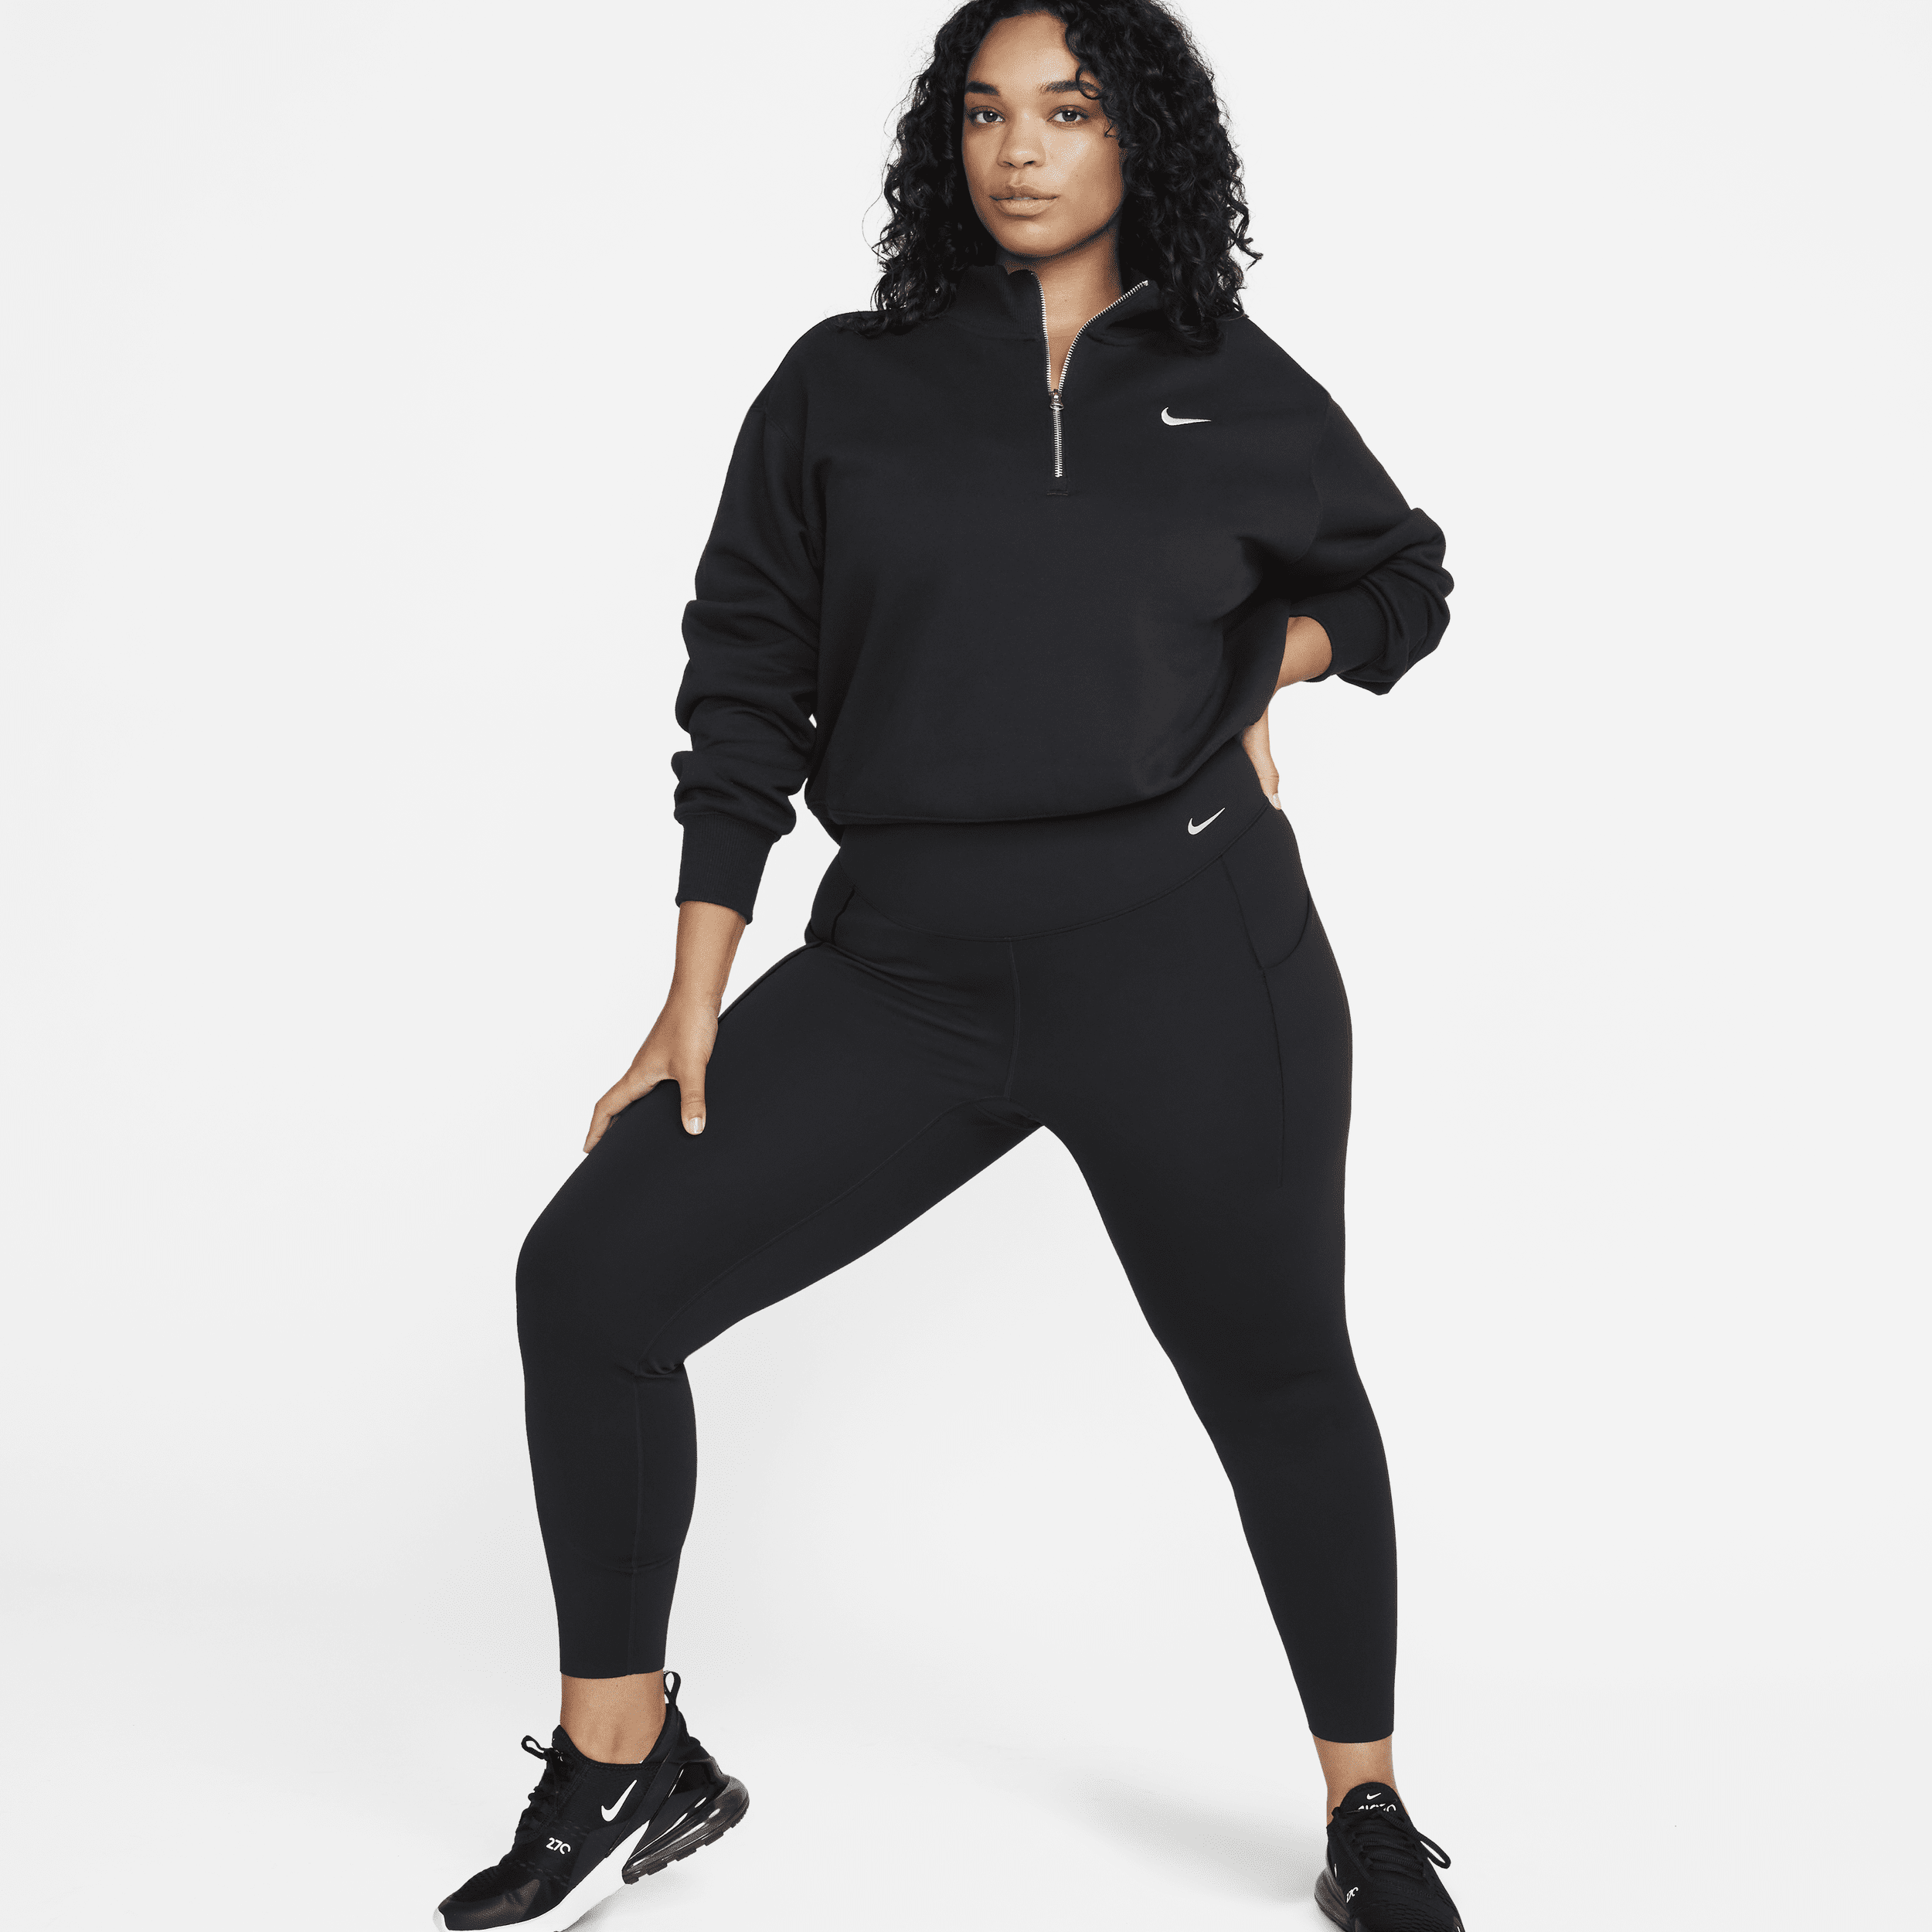 Nike Universa-leggings i fuld længde med medium støtte, høj talje og lommer til kvinder (plus size) - sort